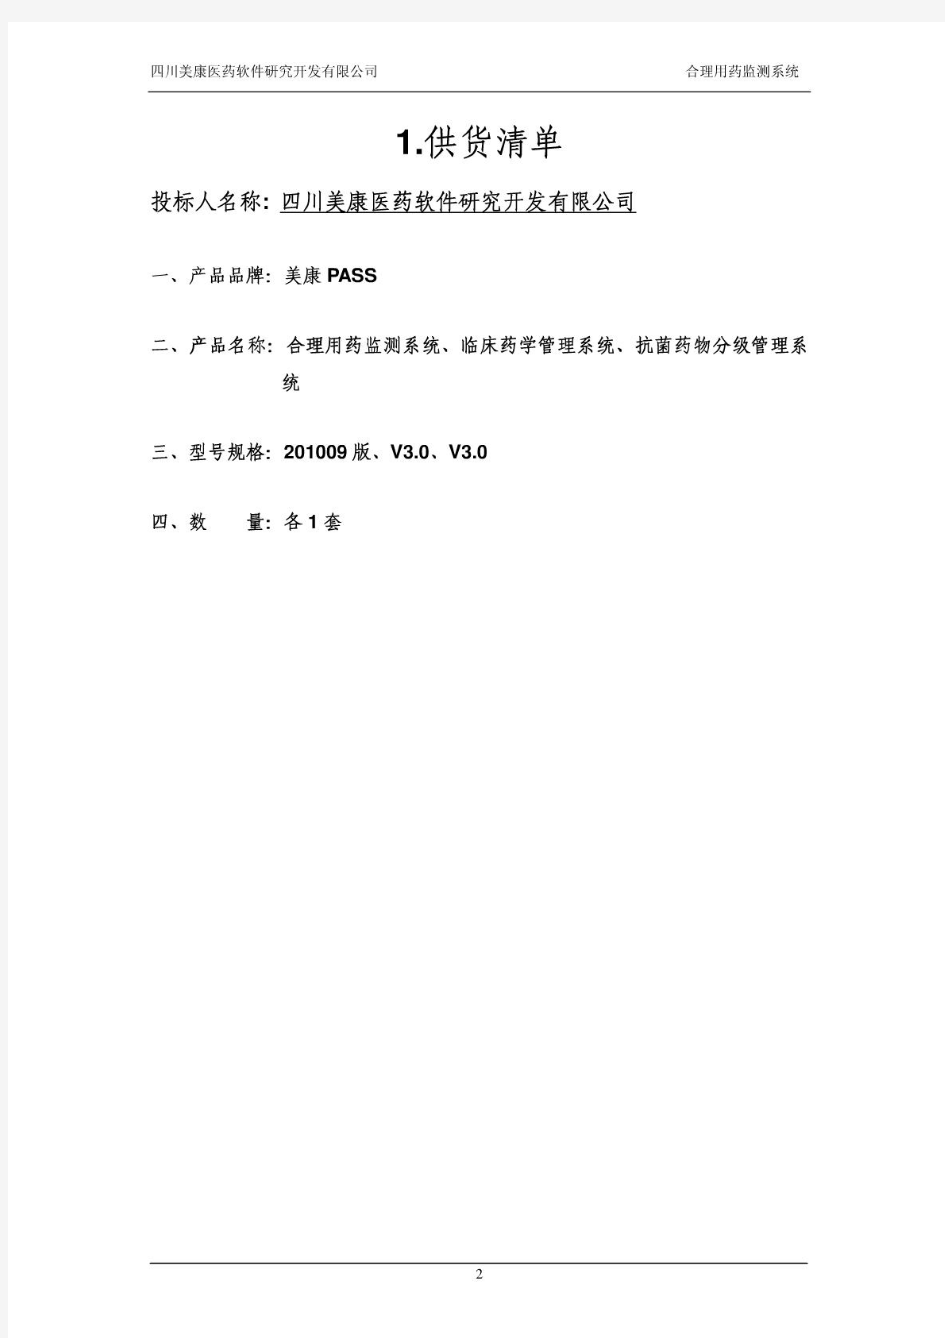 四川美康合理用药监测系统投标书(技术部分)